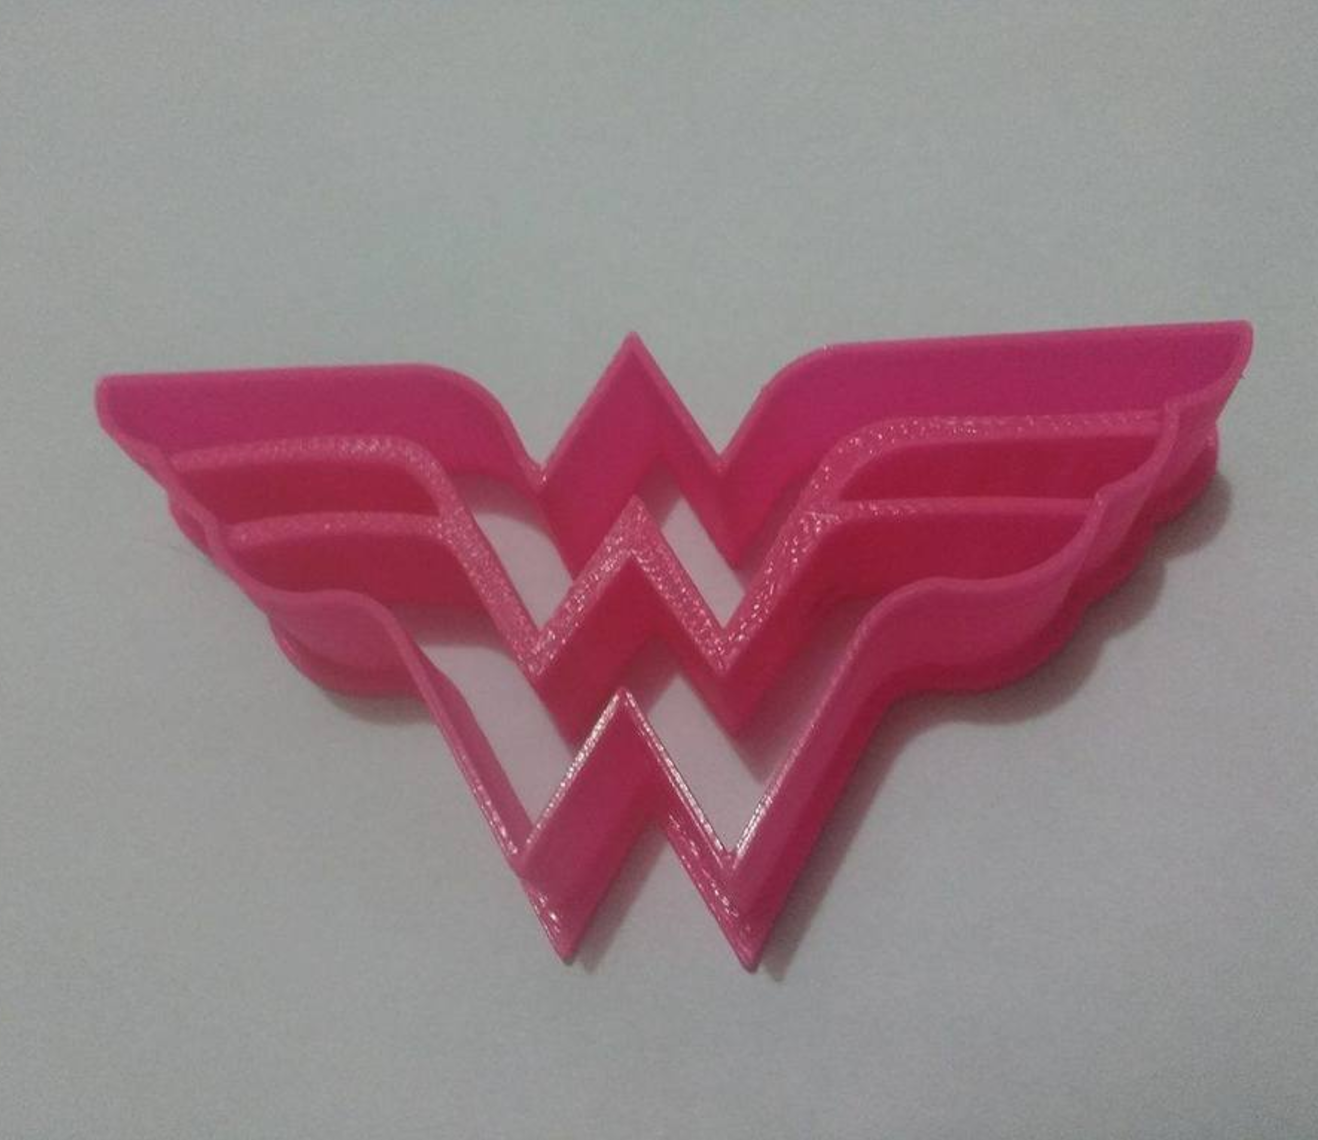 Capture d’écran 2017-08-22 à 14.34.18.png Download STL file Wonder Woman cookie cutter • 3D printable object, Platridi